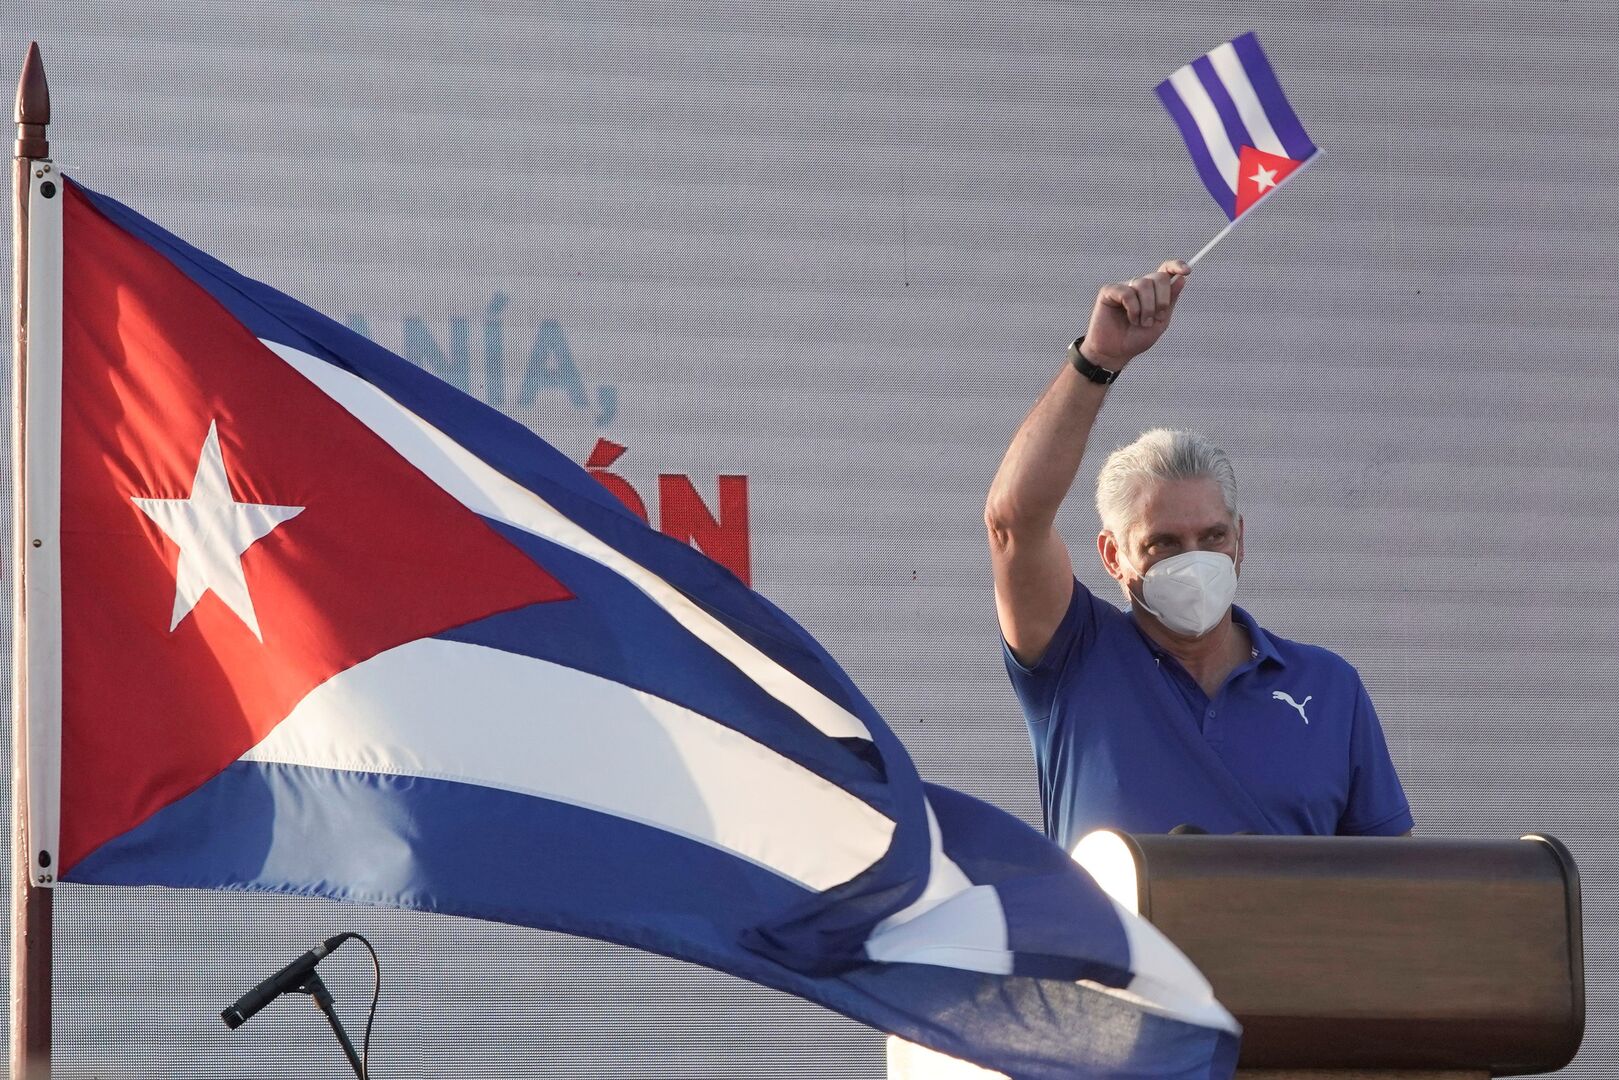 رئيس كوبا: مشاهد الاحتجاجات التي يراها العالم مفبركة وبلدنا يواجه حربا غير تقليدية